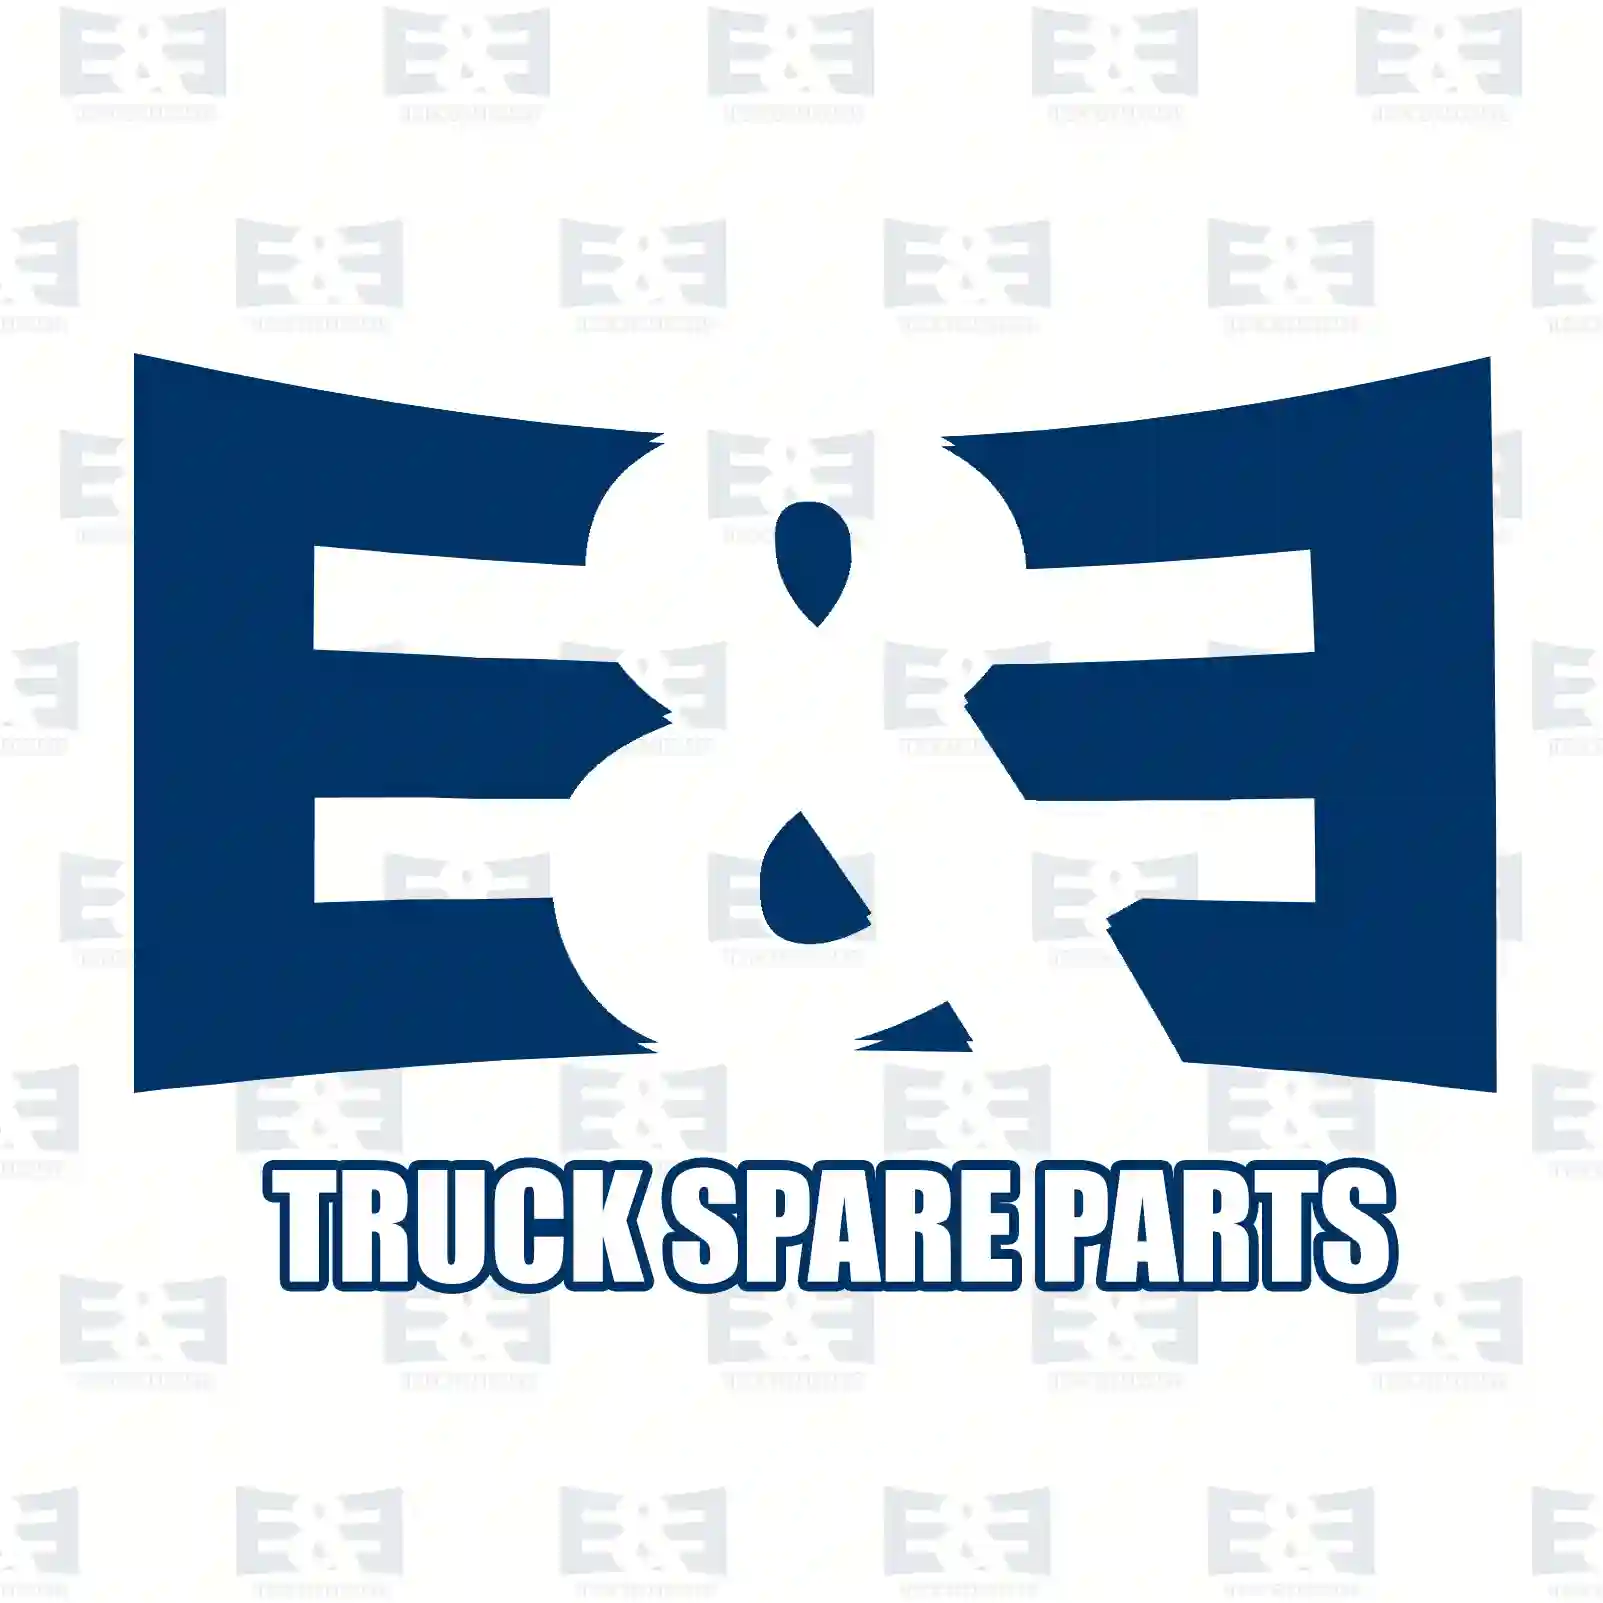 Ball joint, gear shift rod, 2E2279294, 81953016299, 81953020069, 0002689289, 1504320 ||  2E2279294 E&E Truck Spare Parts | Truck Spare Parts, Auotomotive Spare Parts Ball joint, gear shift rod, 2E2279294, 81953016299, 81953020069, 0002689289, 1504320 ||  2E2279294 E&E Truck Spare Parts | Truck Spare Parts, Auotomotive Spare Parts